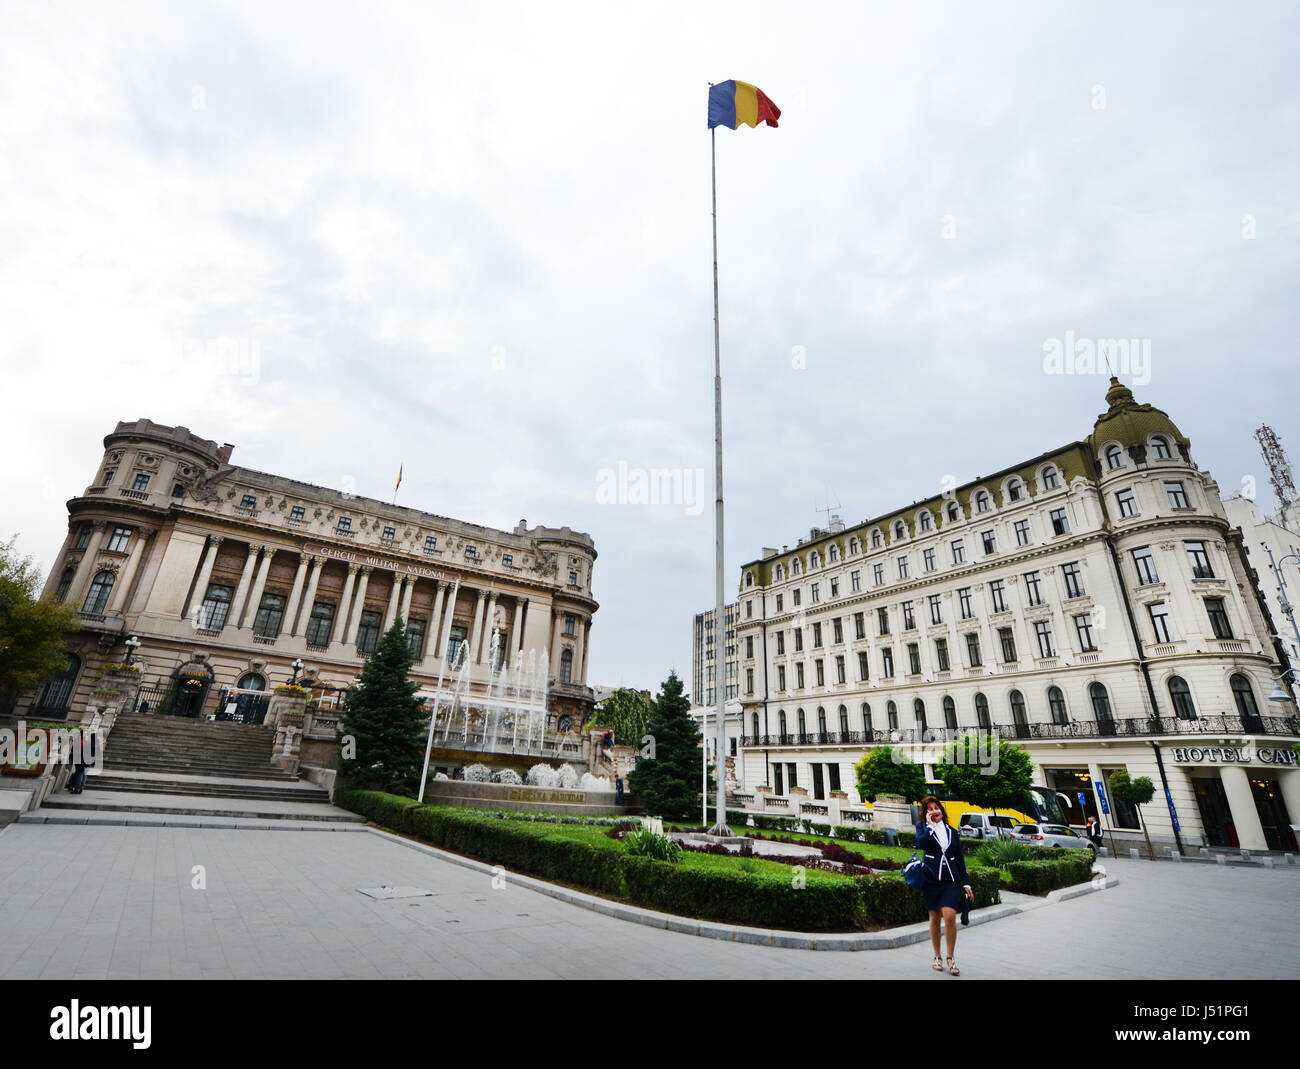 Le Palais de la National Military Circle et la fontaine Sarindar dans Bucarest, Roumanie. Banque D'Images